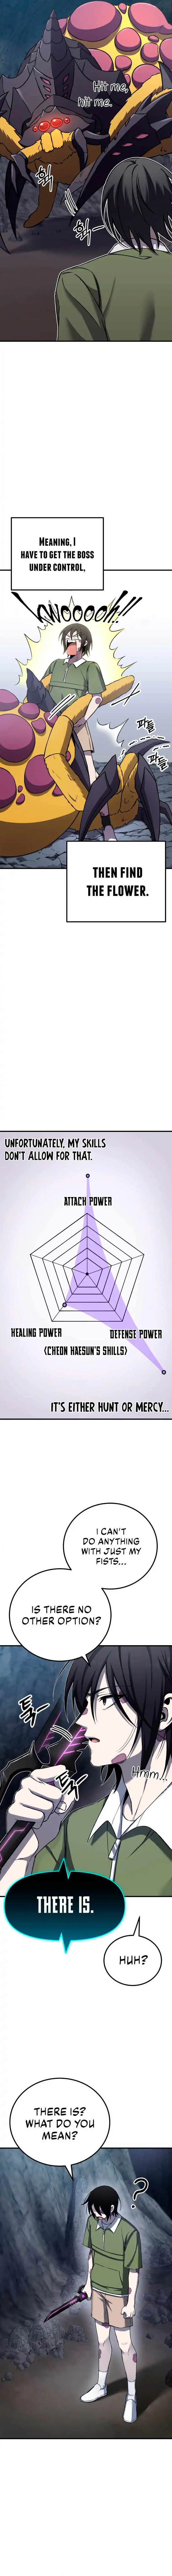 Poison-Eating Healer Chapter 11